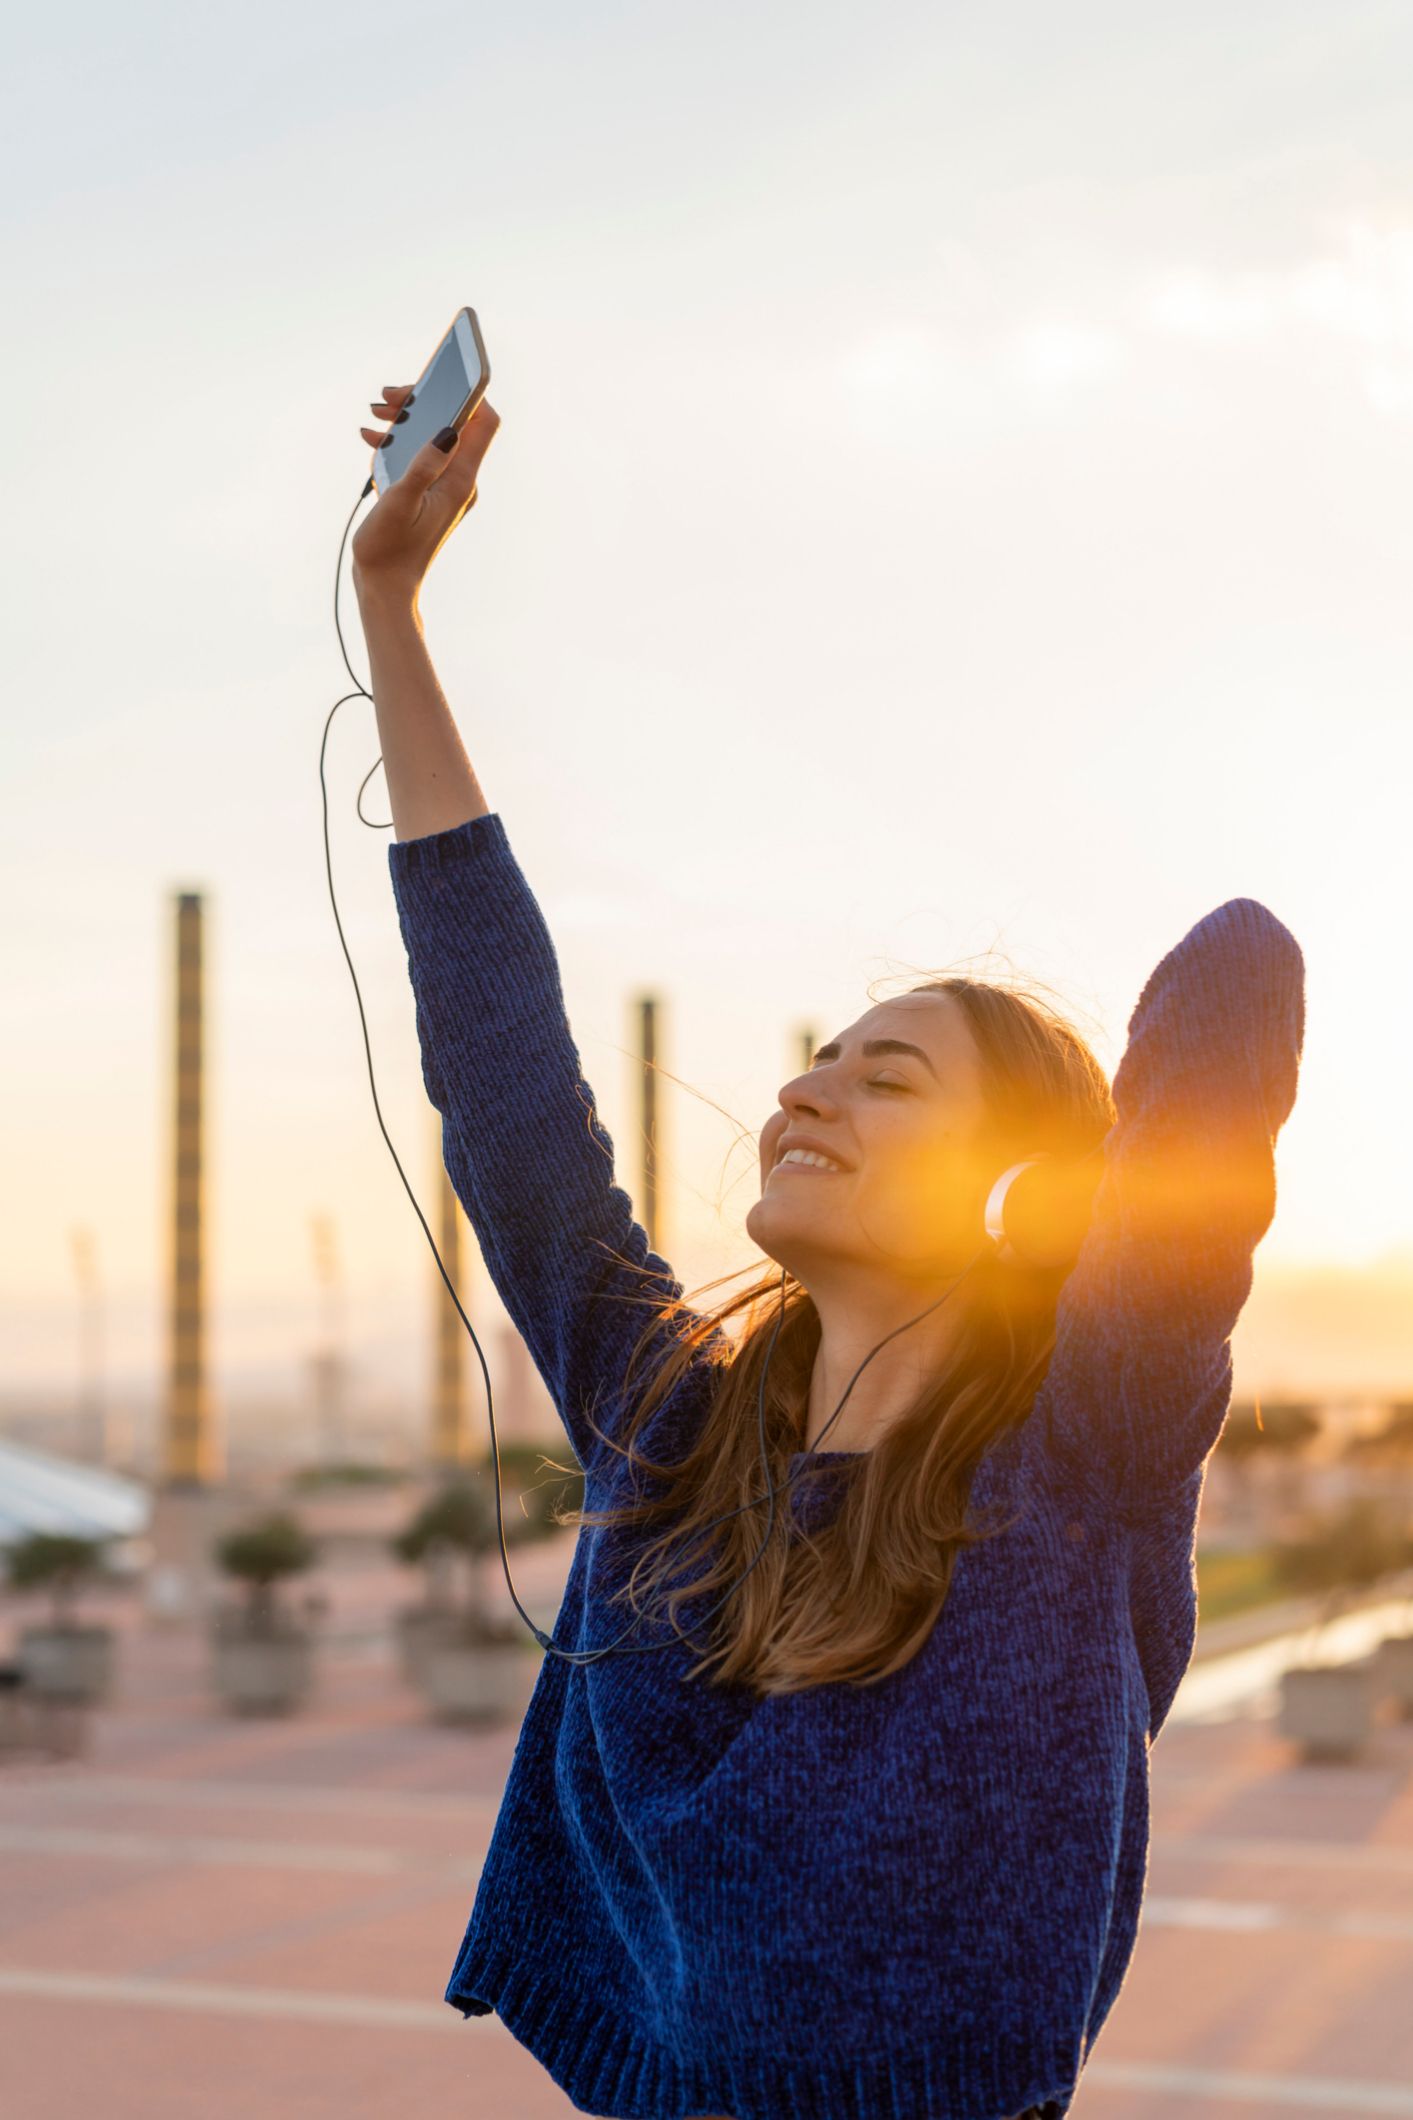 Escuchar música nos ayuda a elevar nuestra dopamina y evitar el estrés malo.